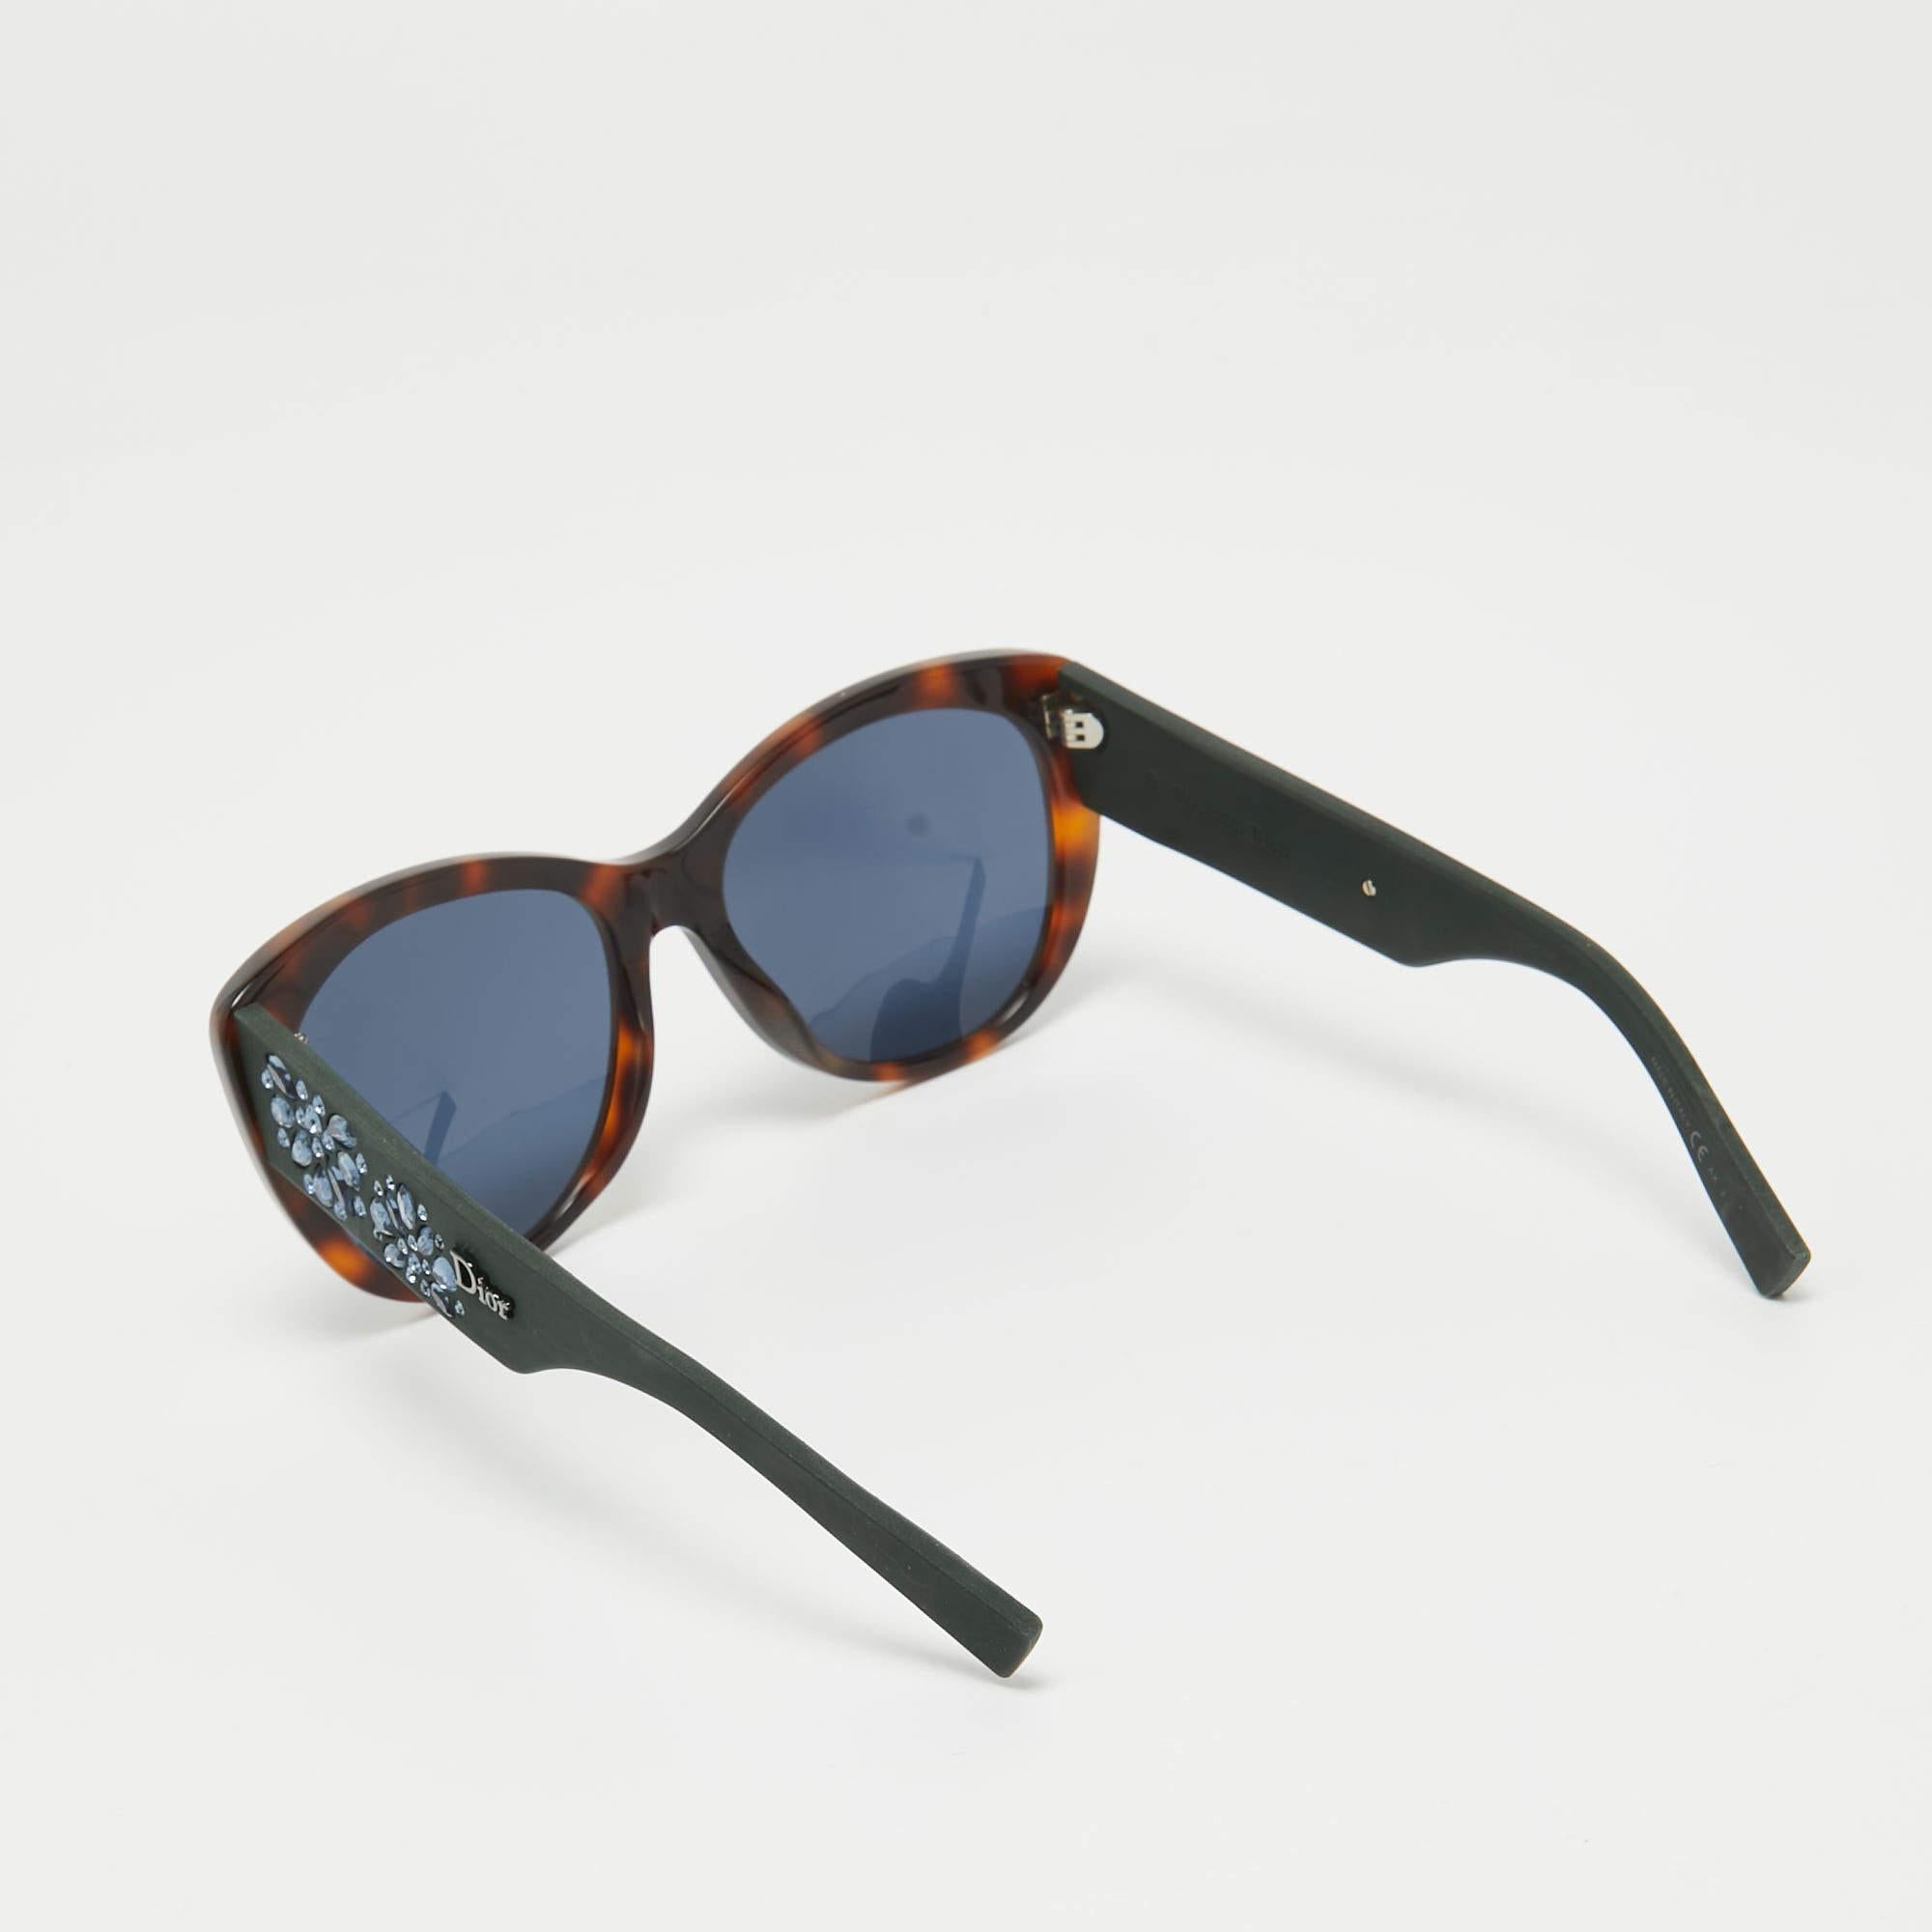 Eine auffällige Sonnenbrille von Dior ist mit Sicherheit ein wertvoller Kauf. Mit ihrem trendigen Rahmen und den augenschonenden Gläsern ist die Sonnenbrille ideal für den ganzen Tag.

